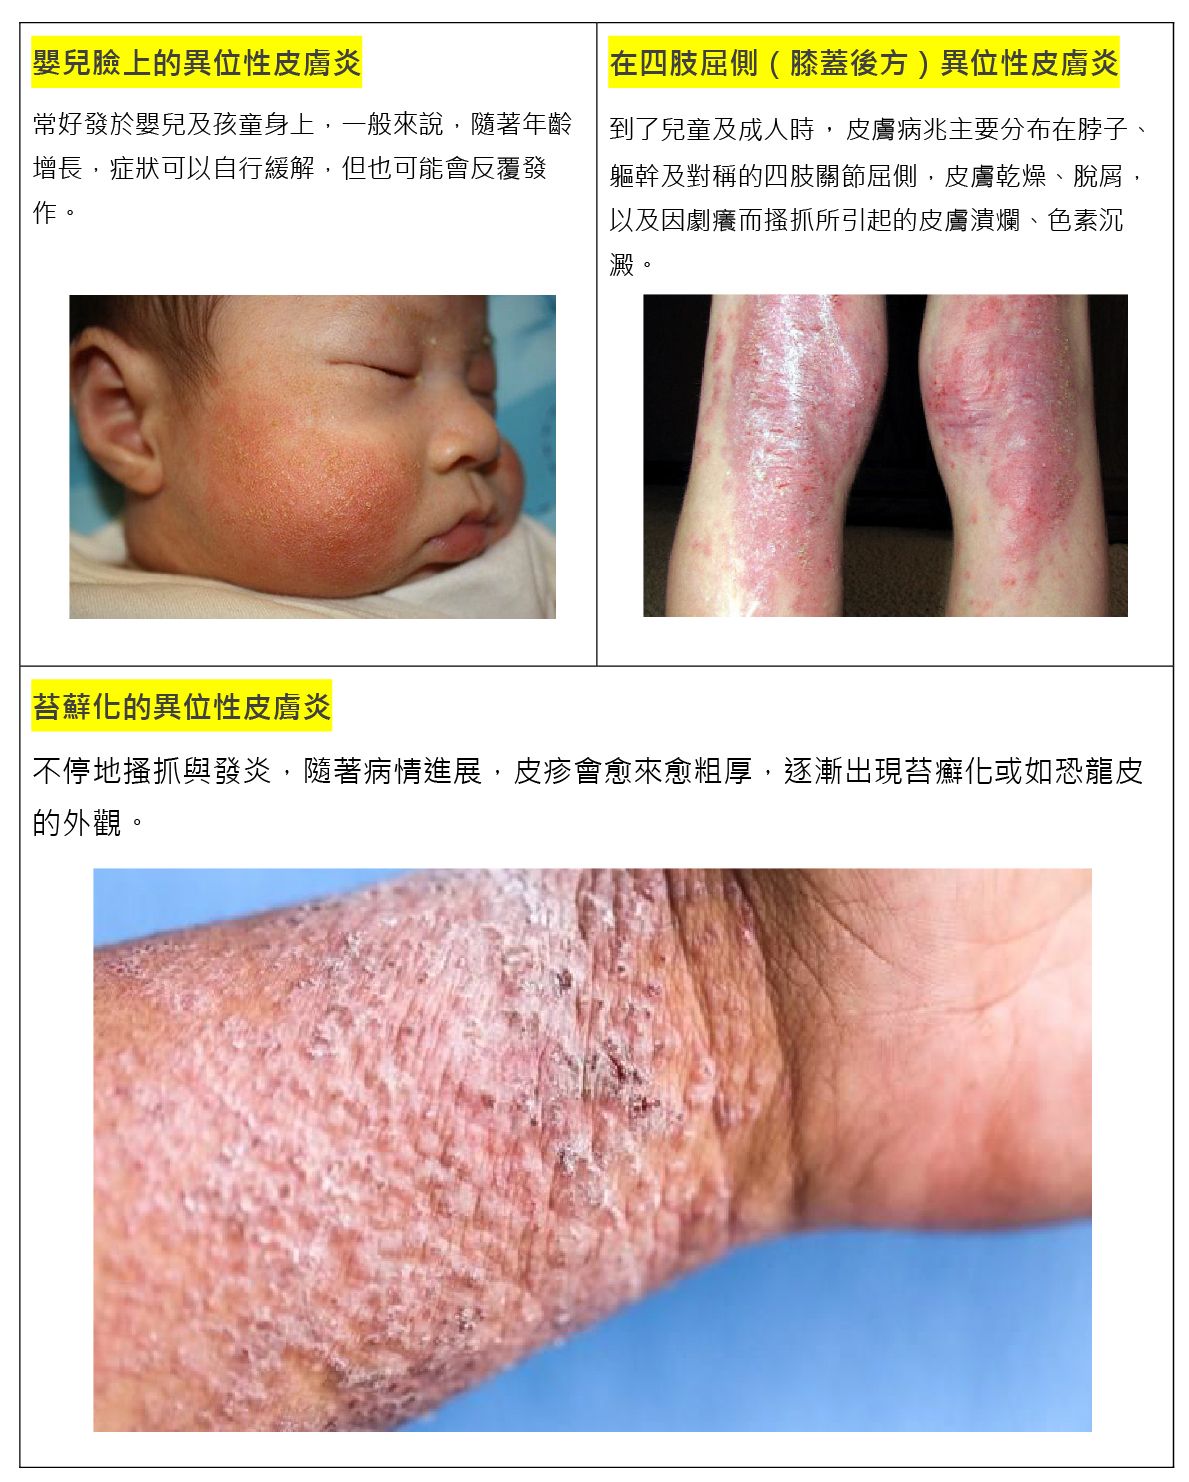 異位性皮膚炎常有症狀